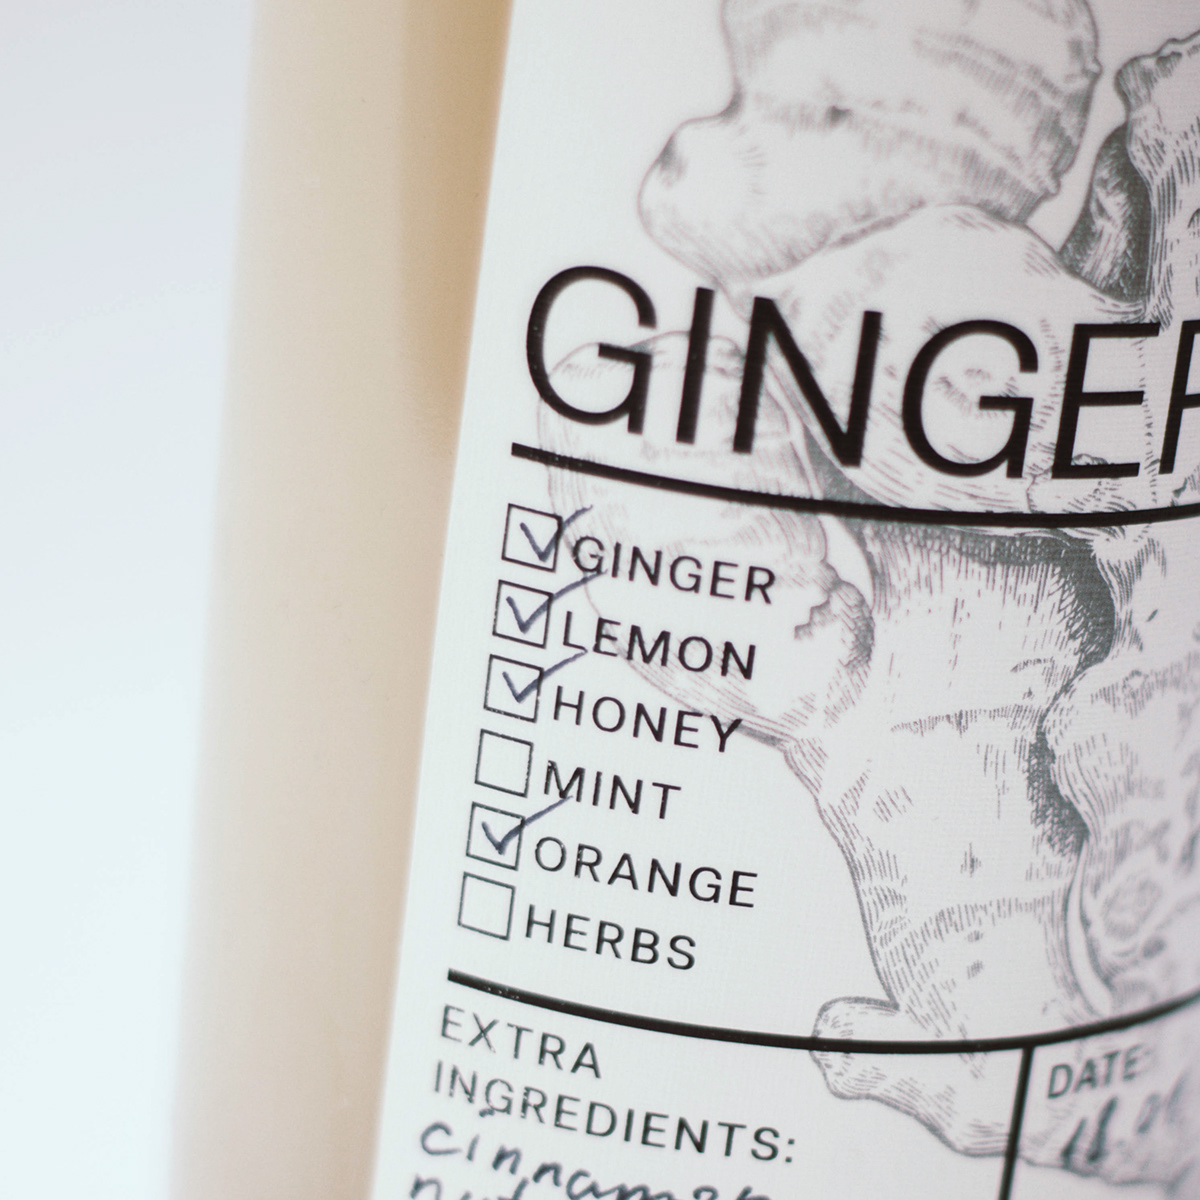 Label Packaging beer ginger cider drink bottle vintage manufacture homemade